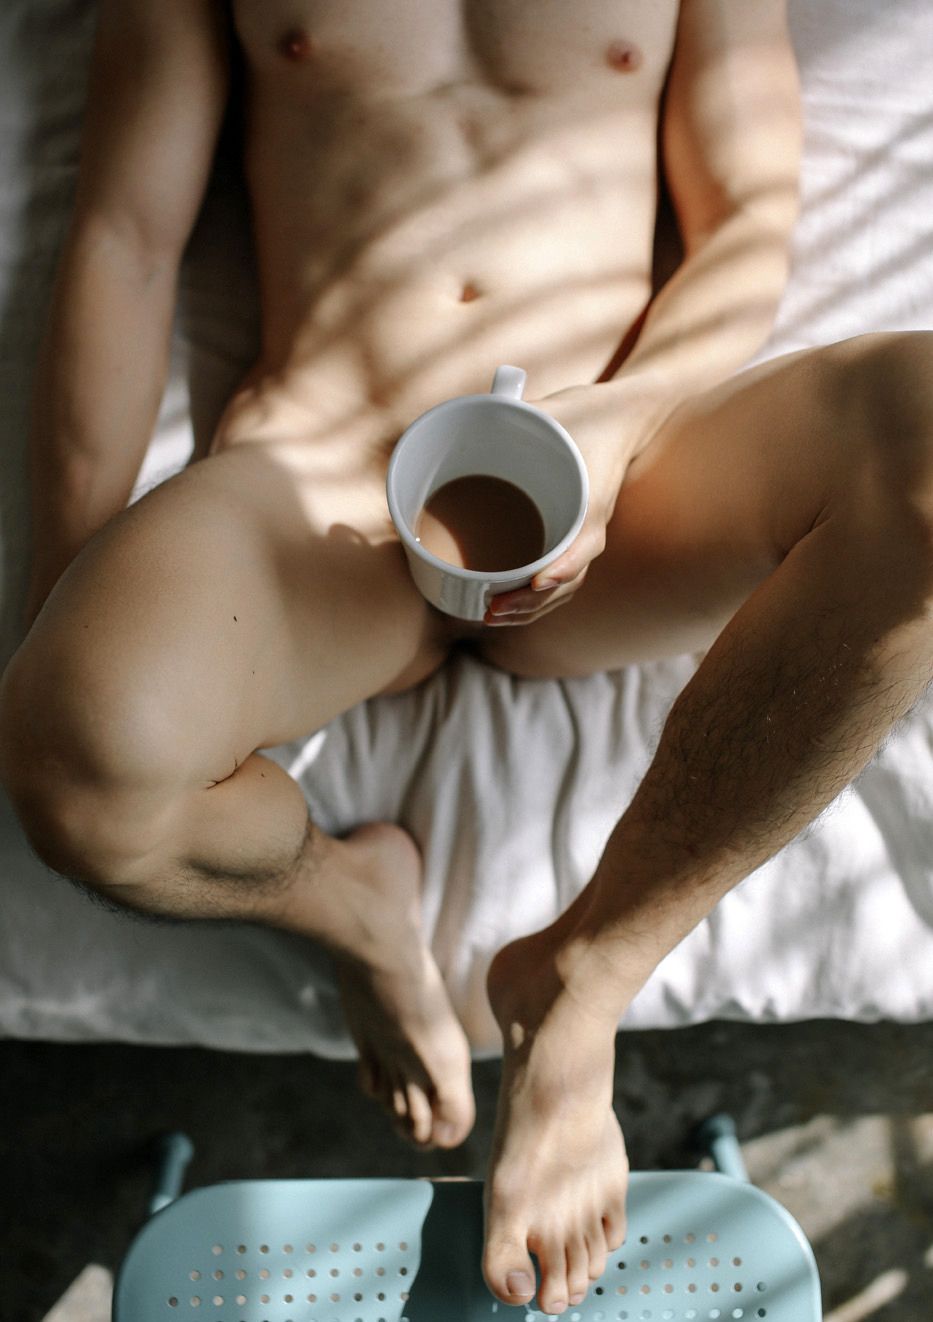 Утренний секс на завтрак